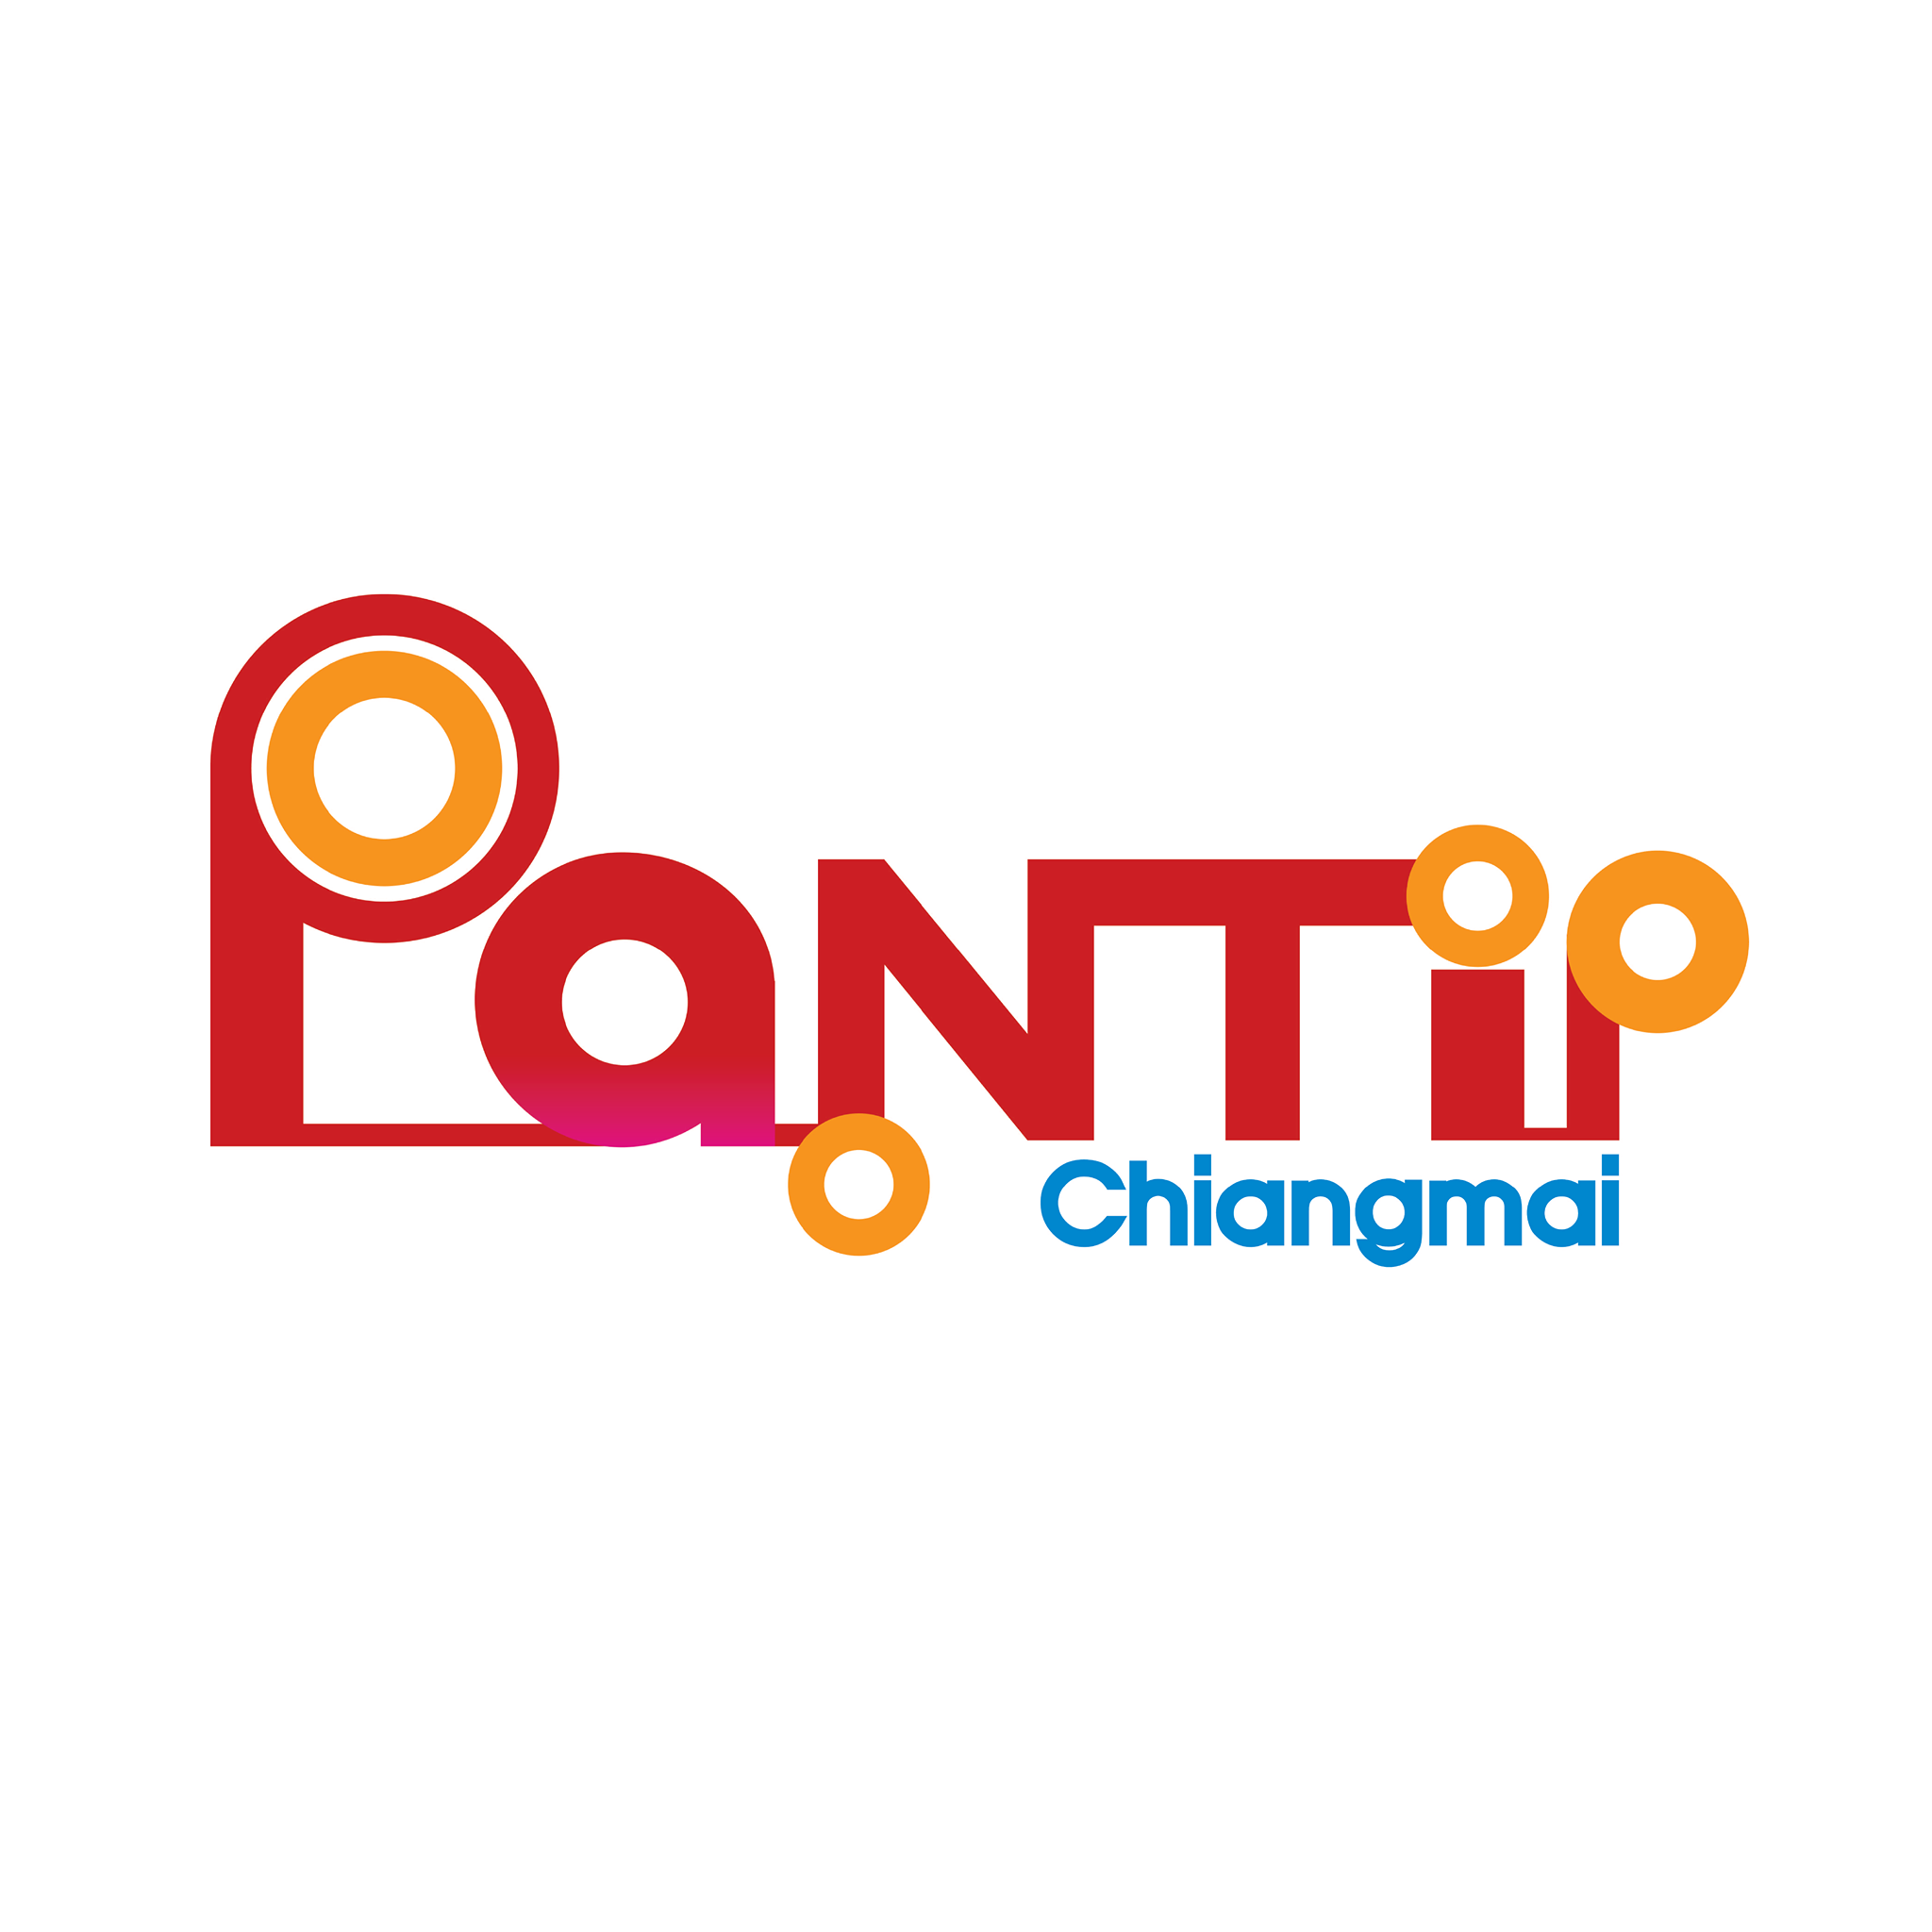 PANTIP Chiangmai ศูนย์การค้าพันธุ์ทิพย์ จ.เชียงใหม่